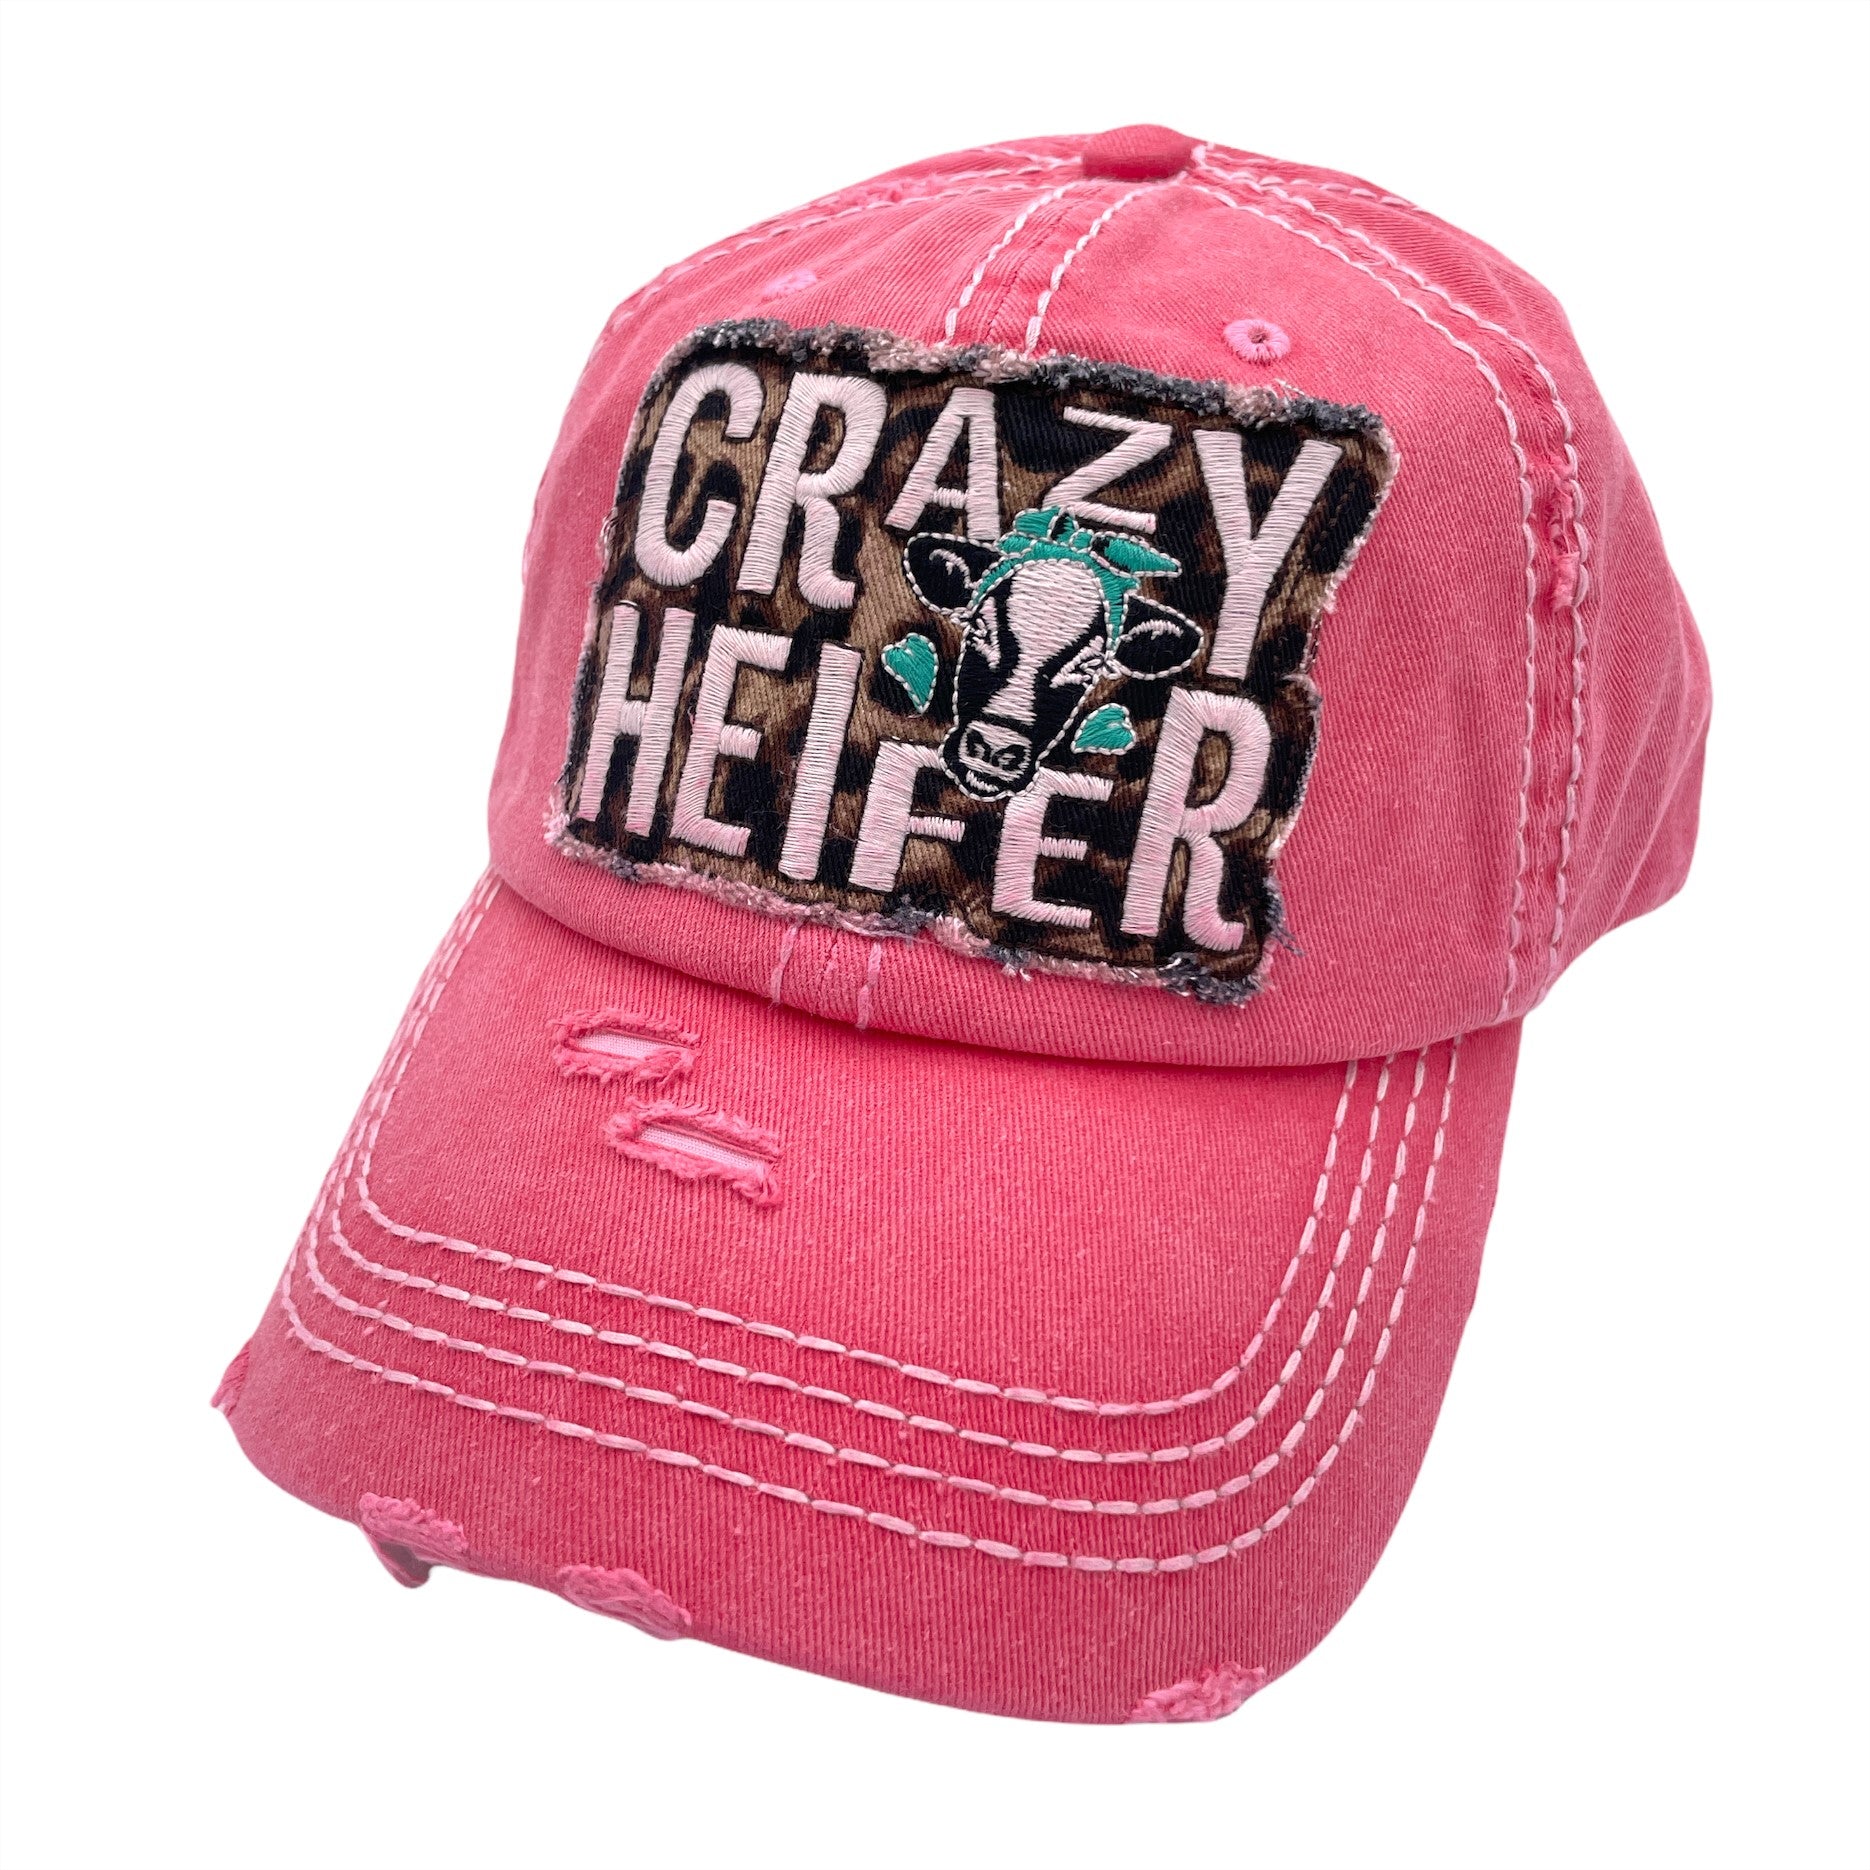 KBV-1412 Crazy Heifer Hot Pink